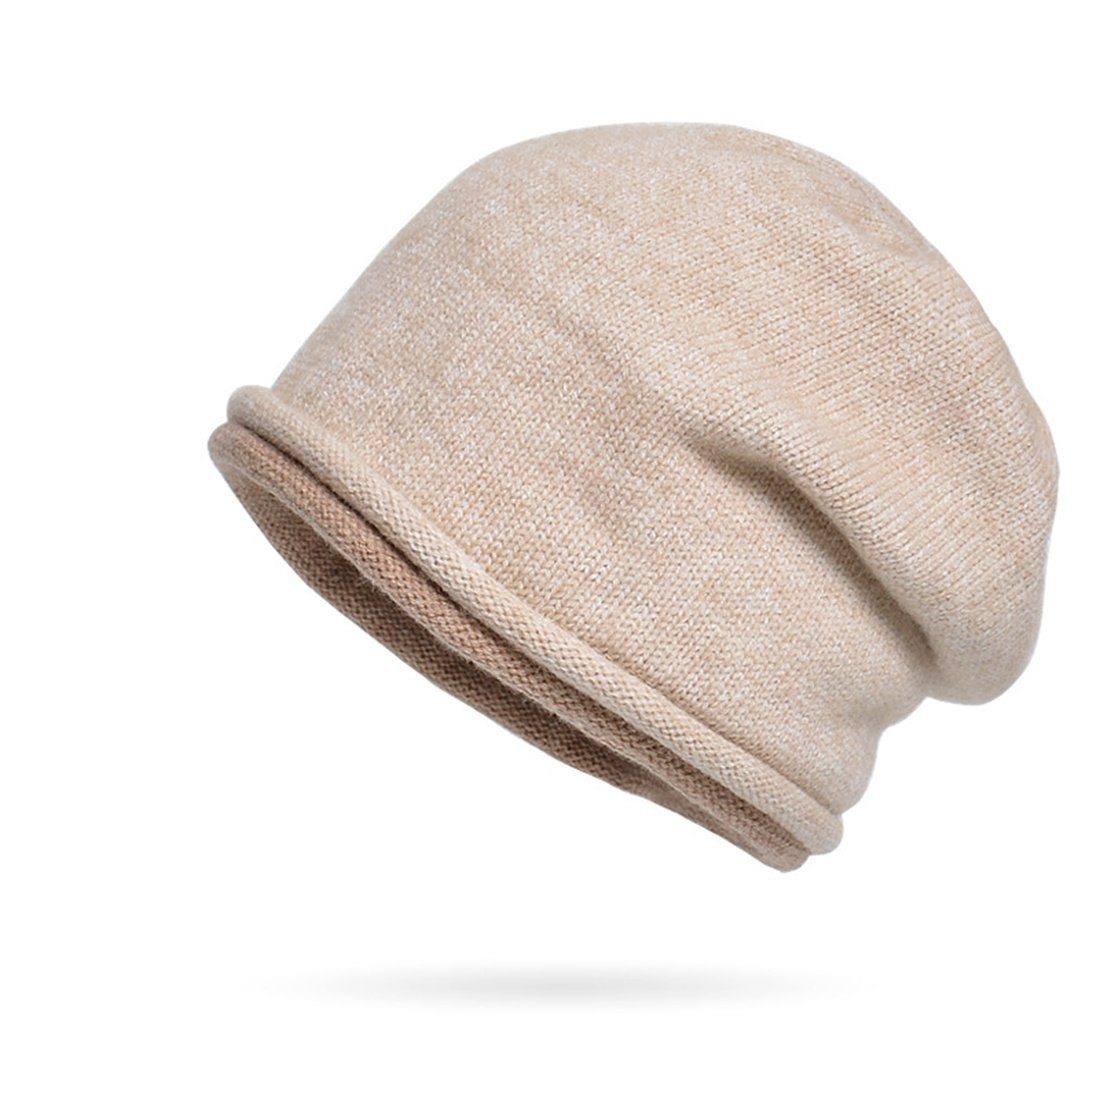 DÖRÖY Strickmütze Unisex Winter warme Strickmütze,Ohrenschutz Beige Kopfmütze,gestapelte Mütze